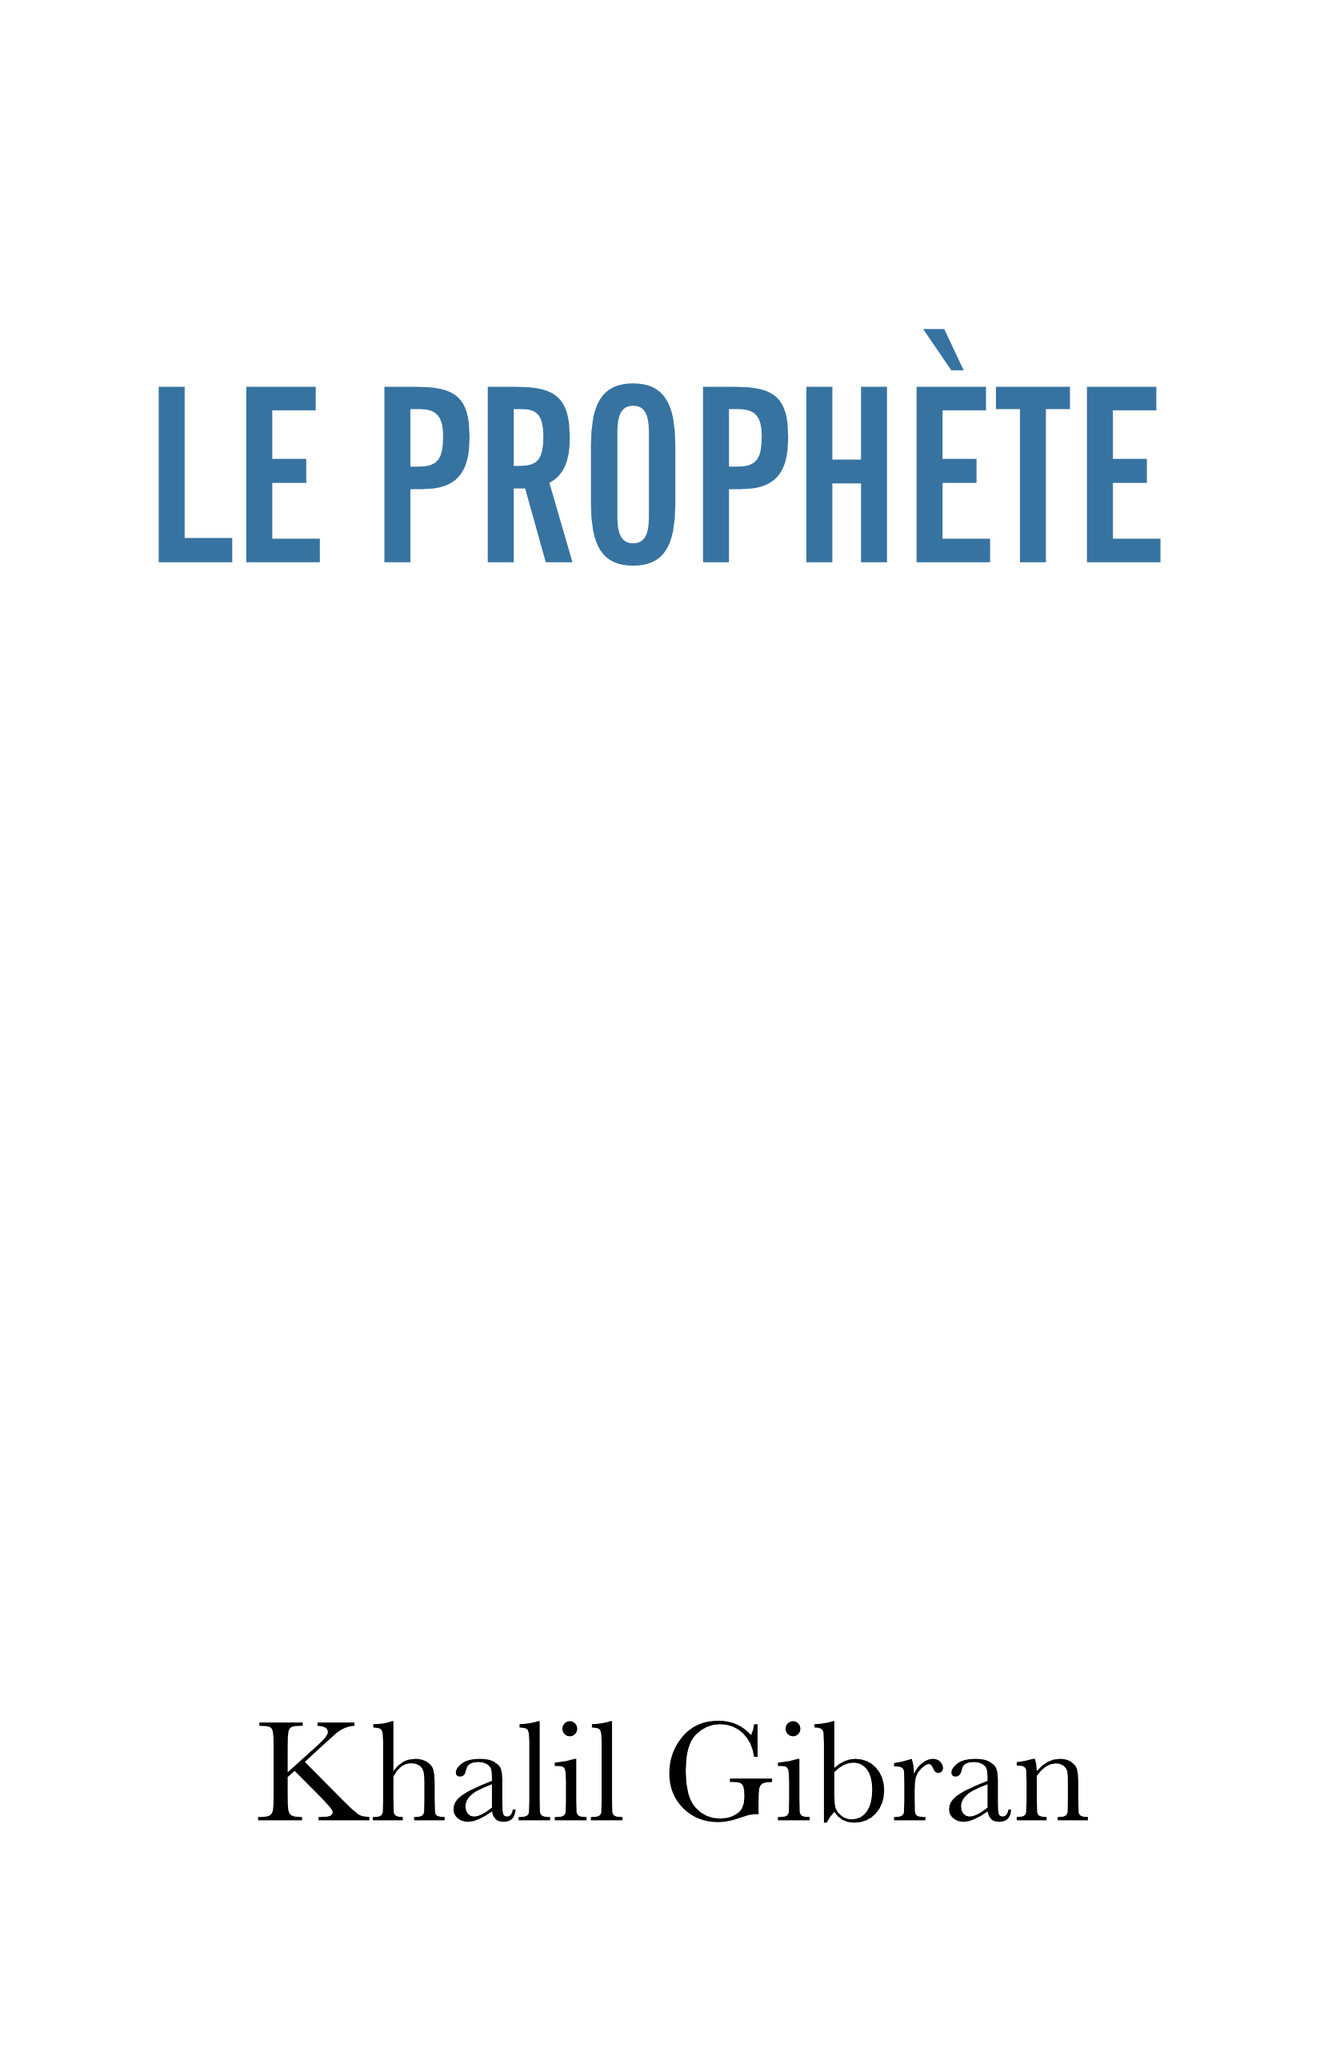 The prophet - paper